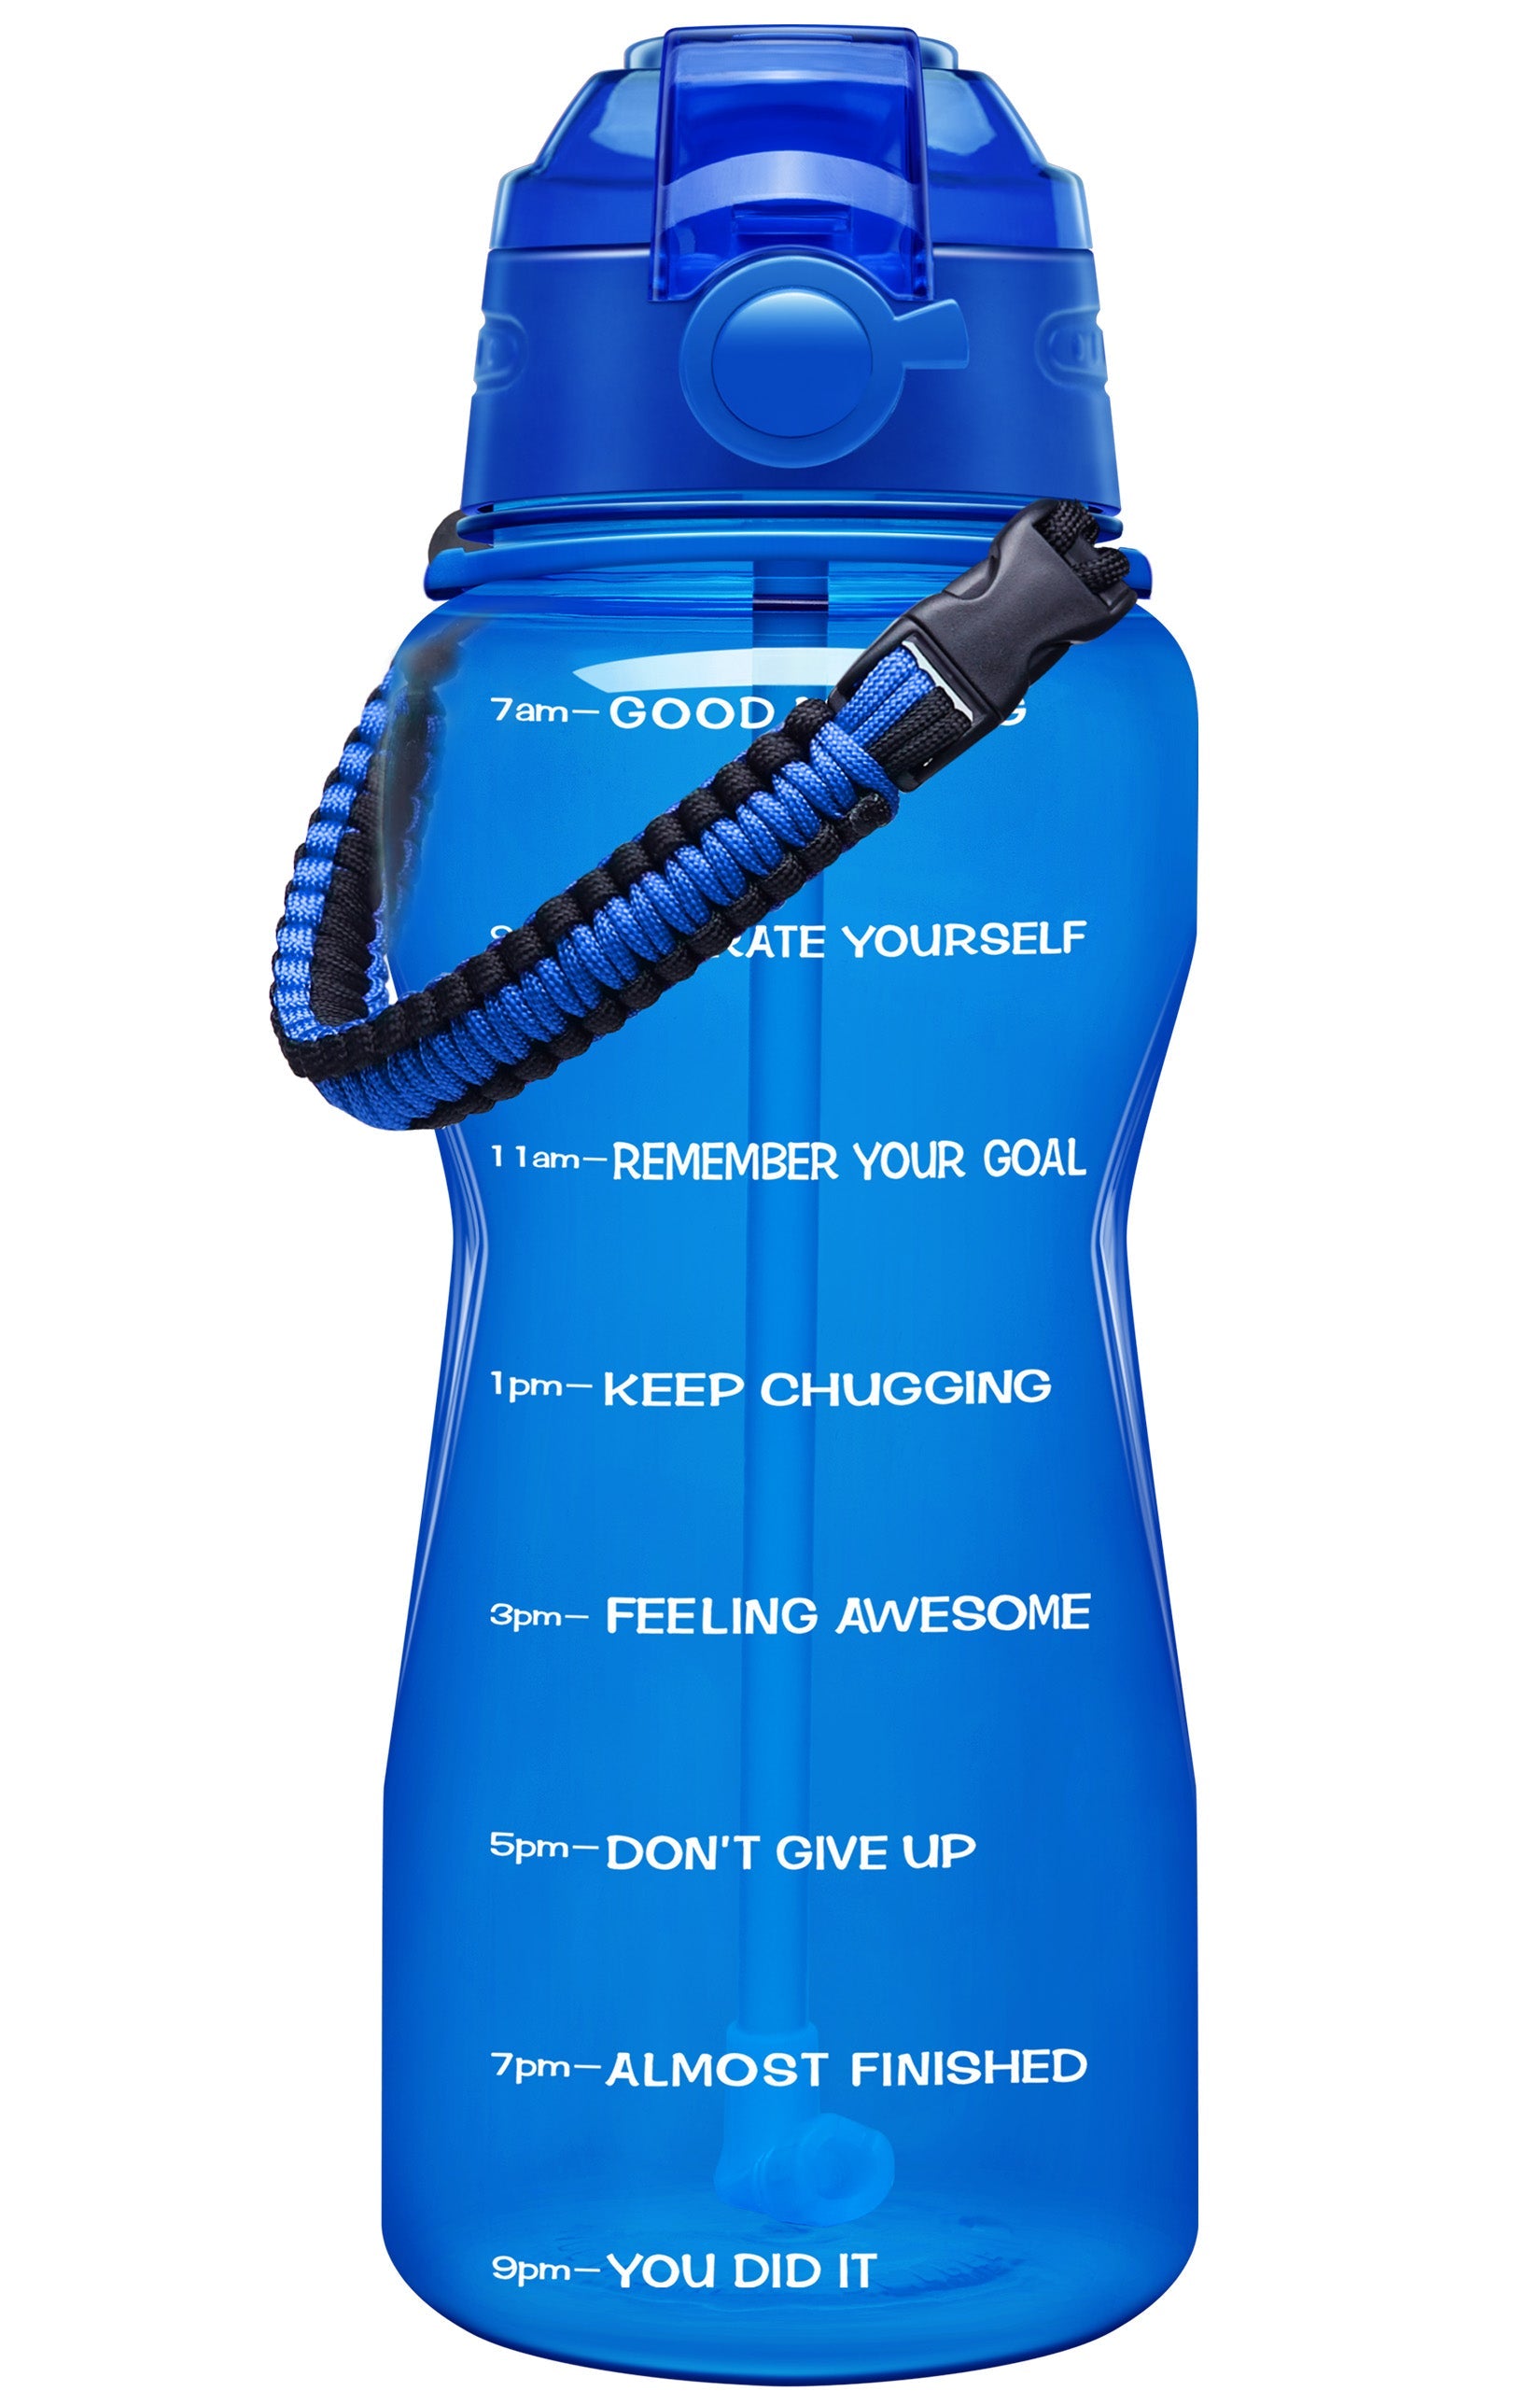 Kylie Jenner's Fidus 64oz Motivational Water Bottle Green-Purple